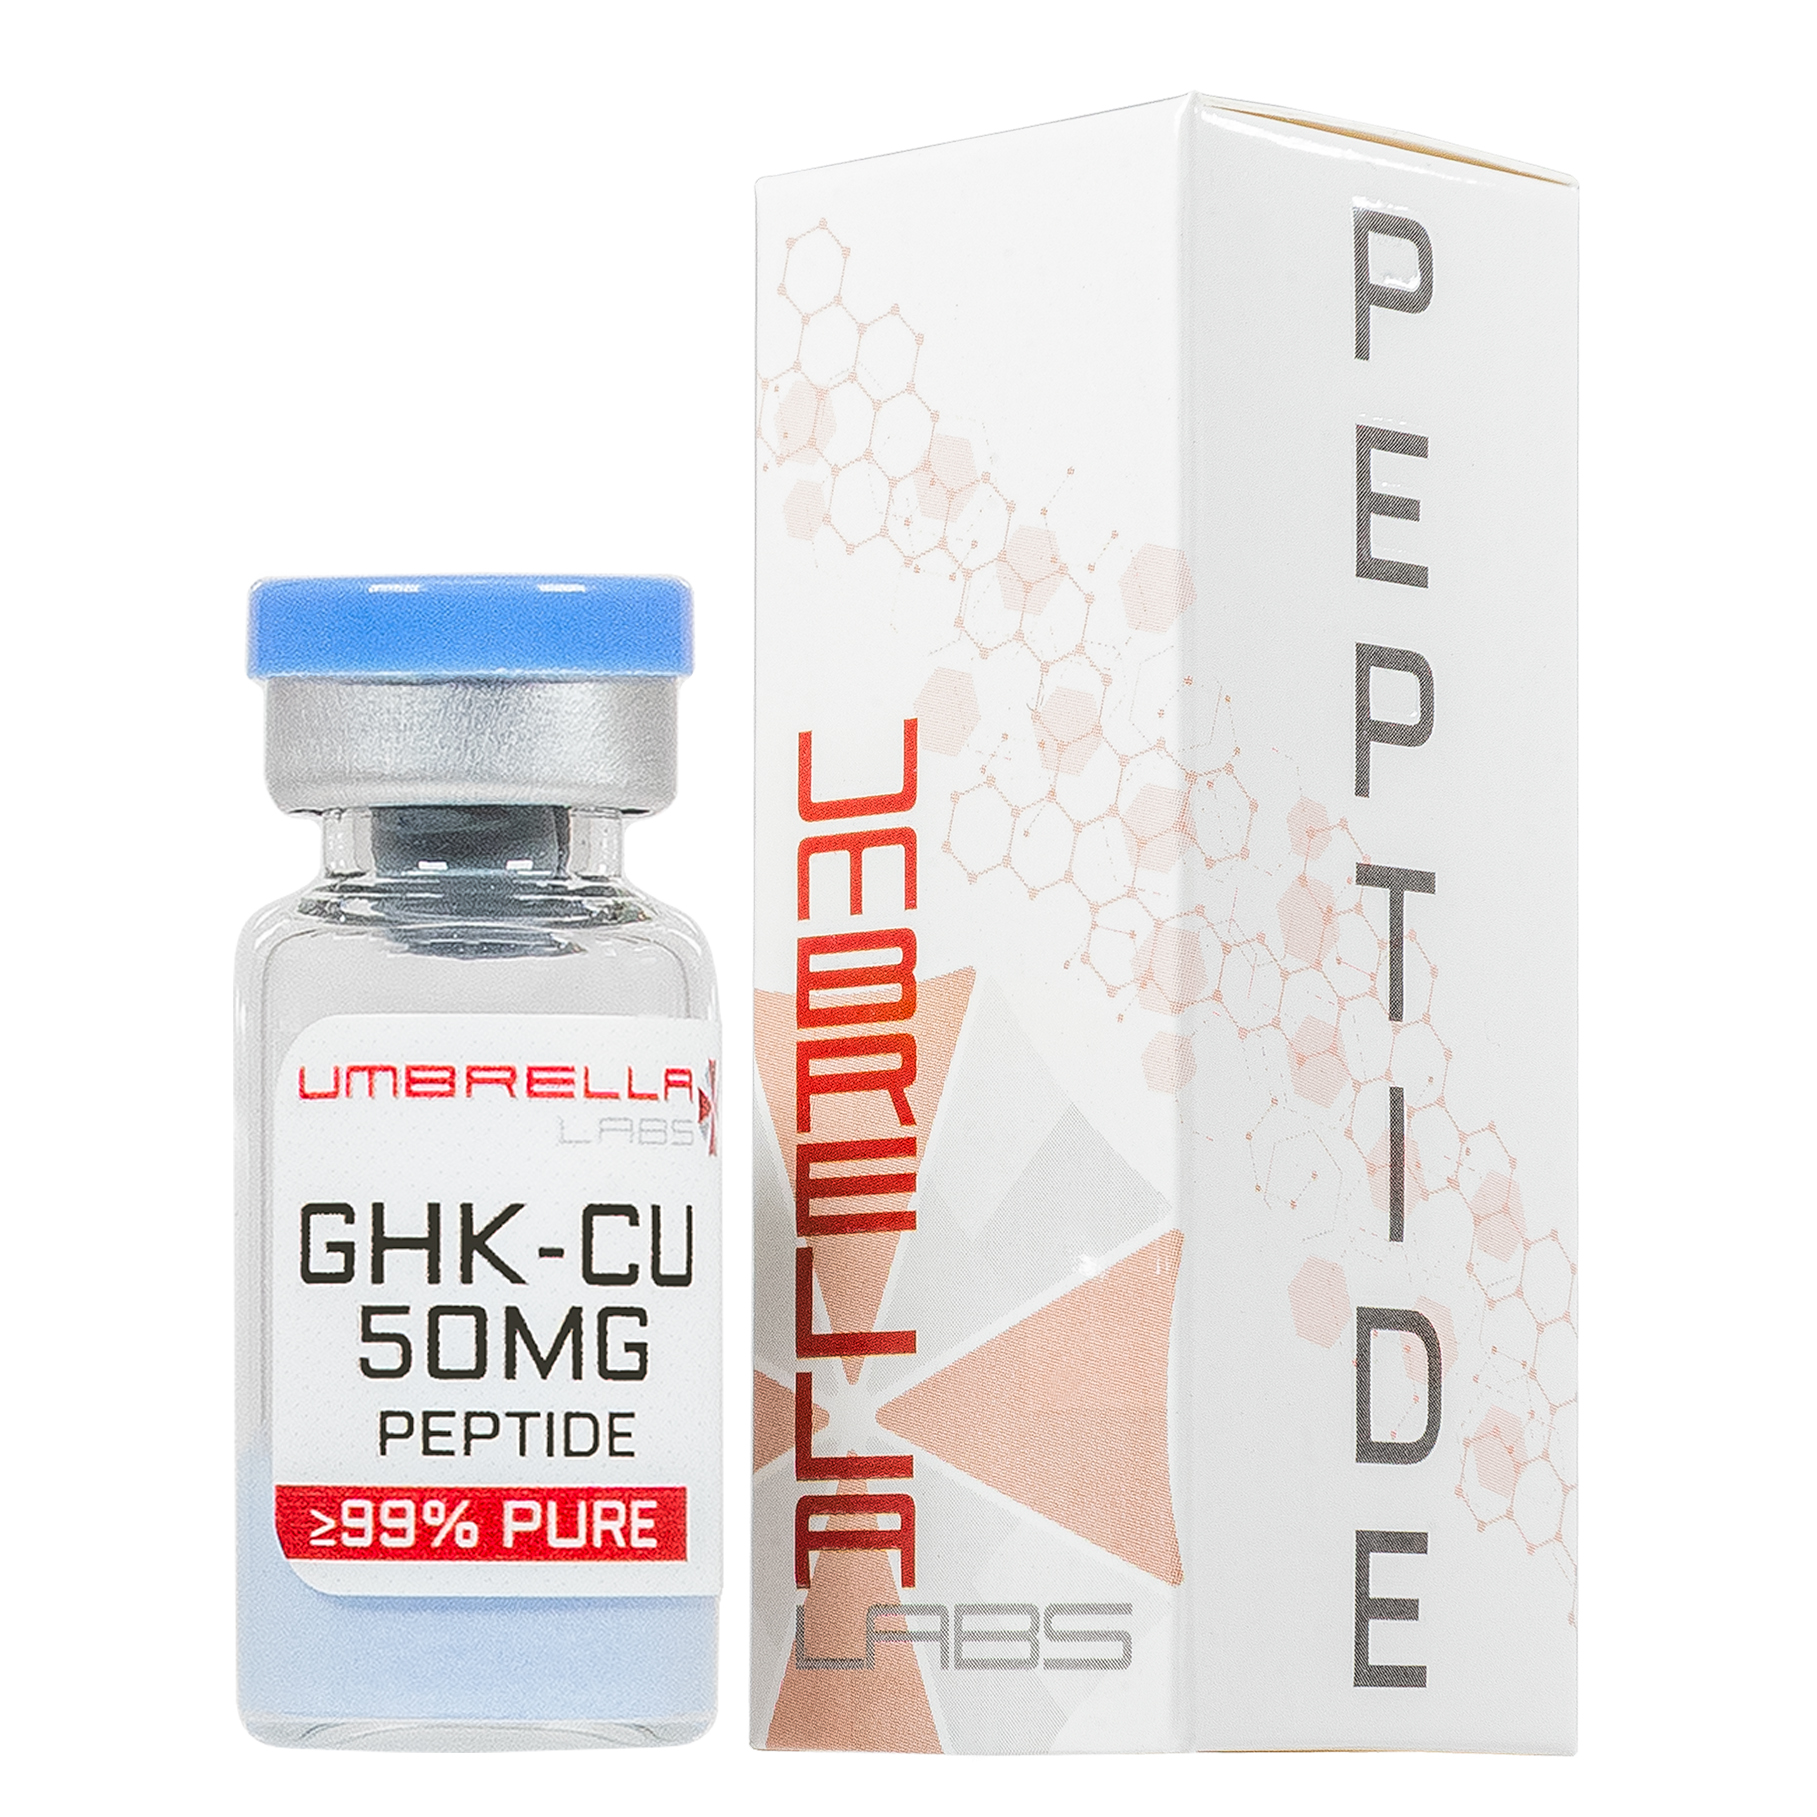 ghk cu copper peptide vial